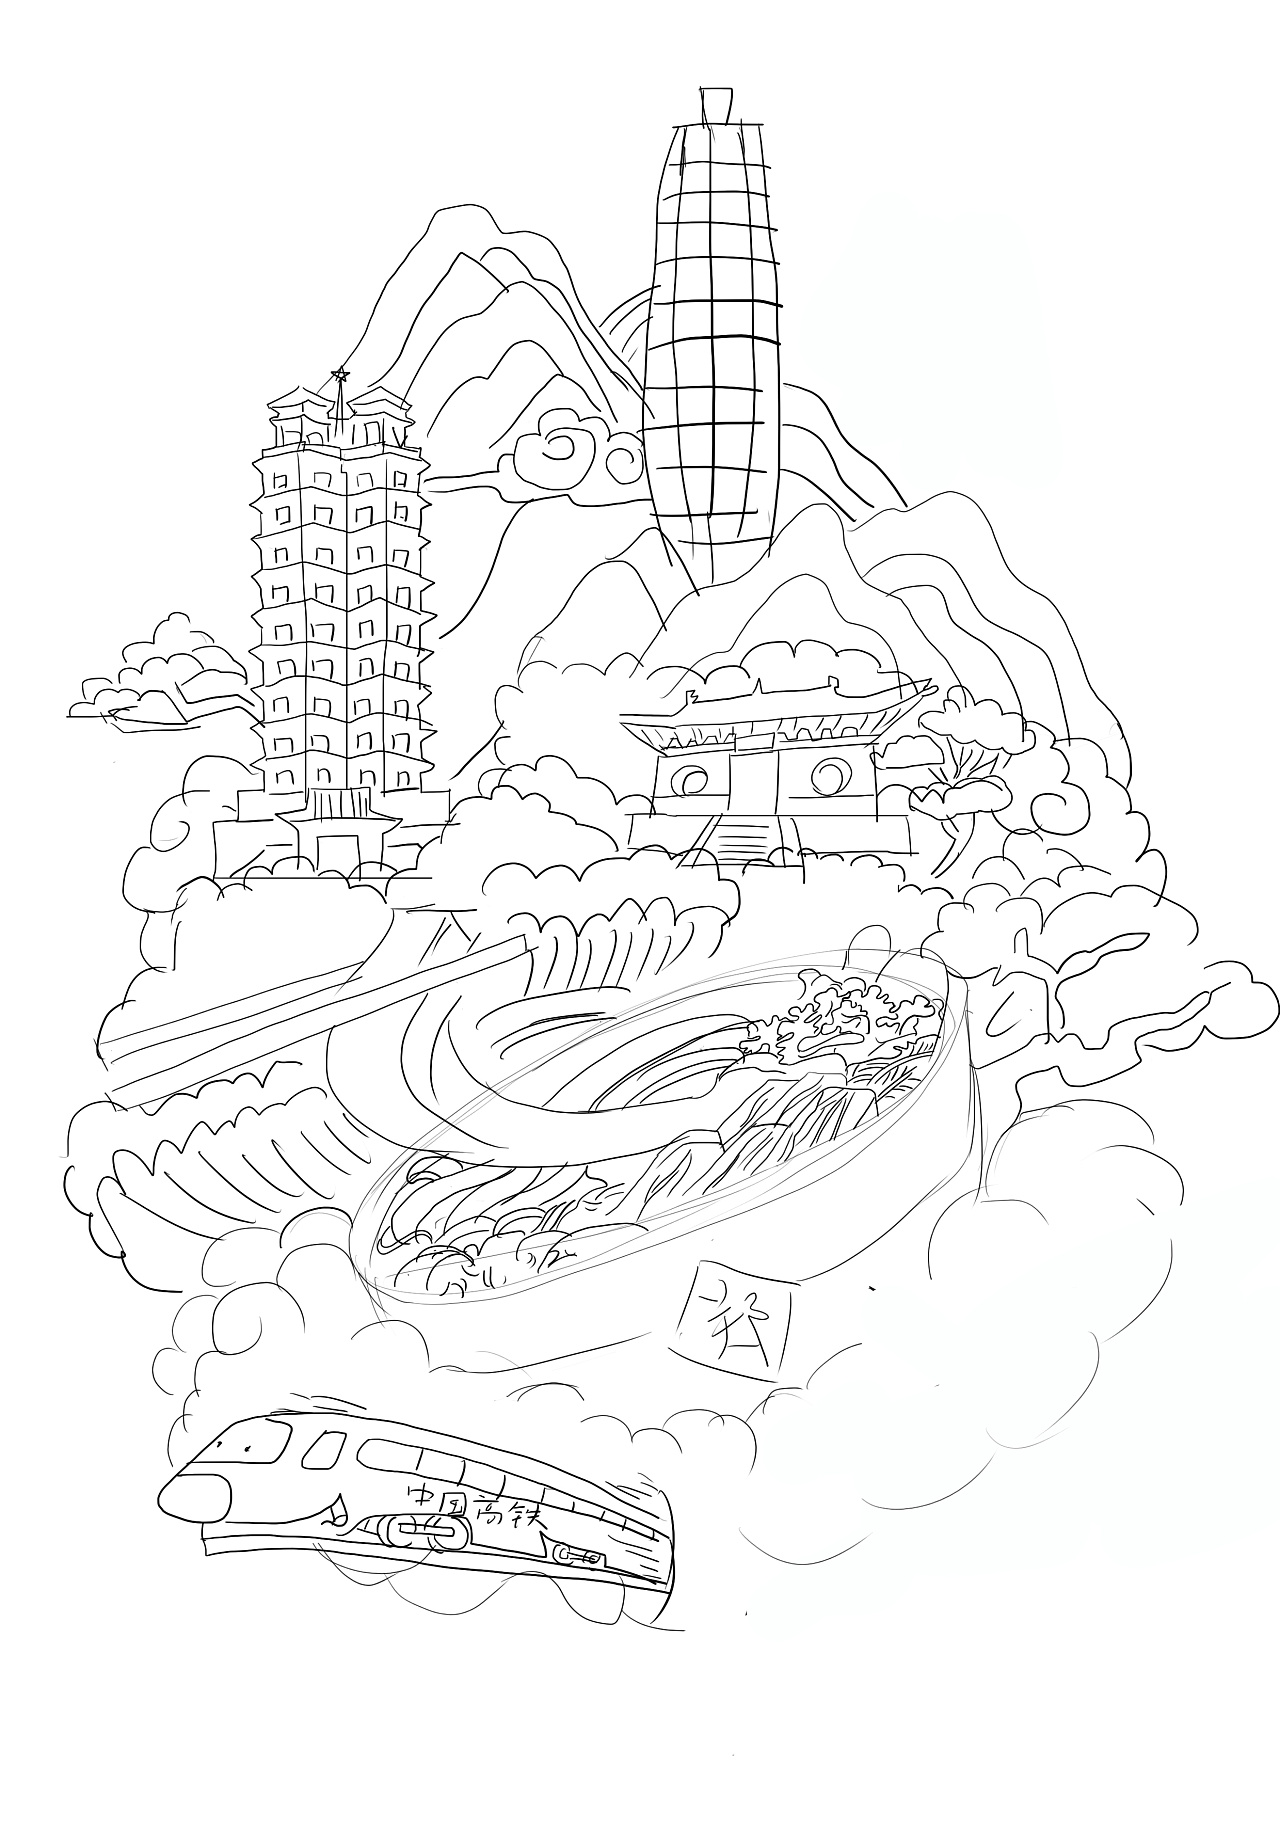 郑州玉米楼的简笔画图片